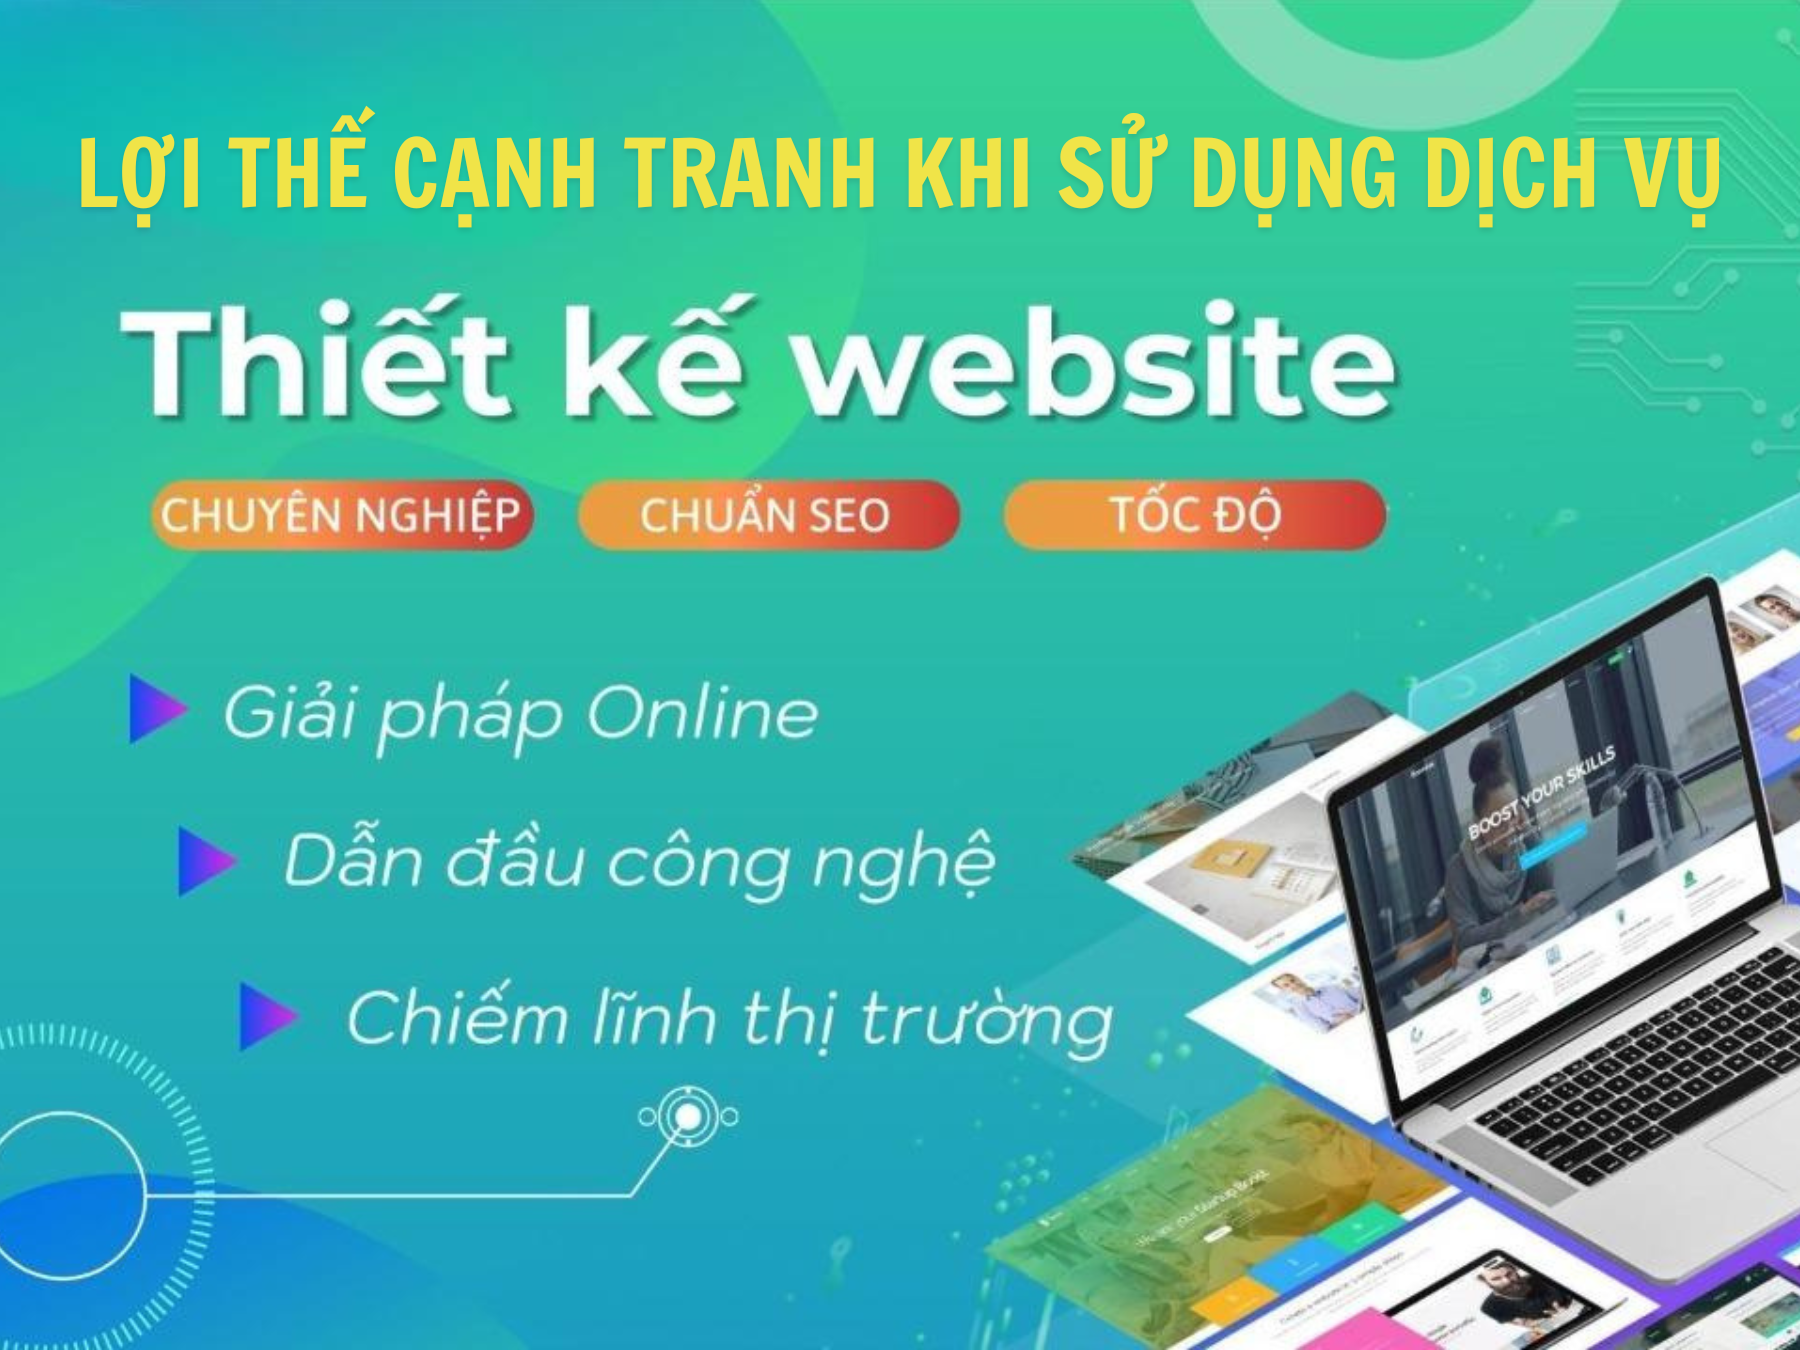 dich-vu-thiet-ke-website-chuyen-nghiep-1